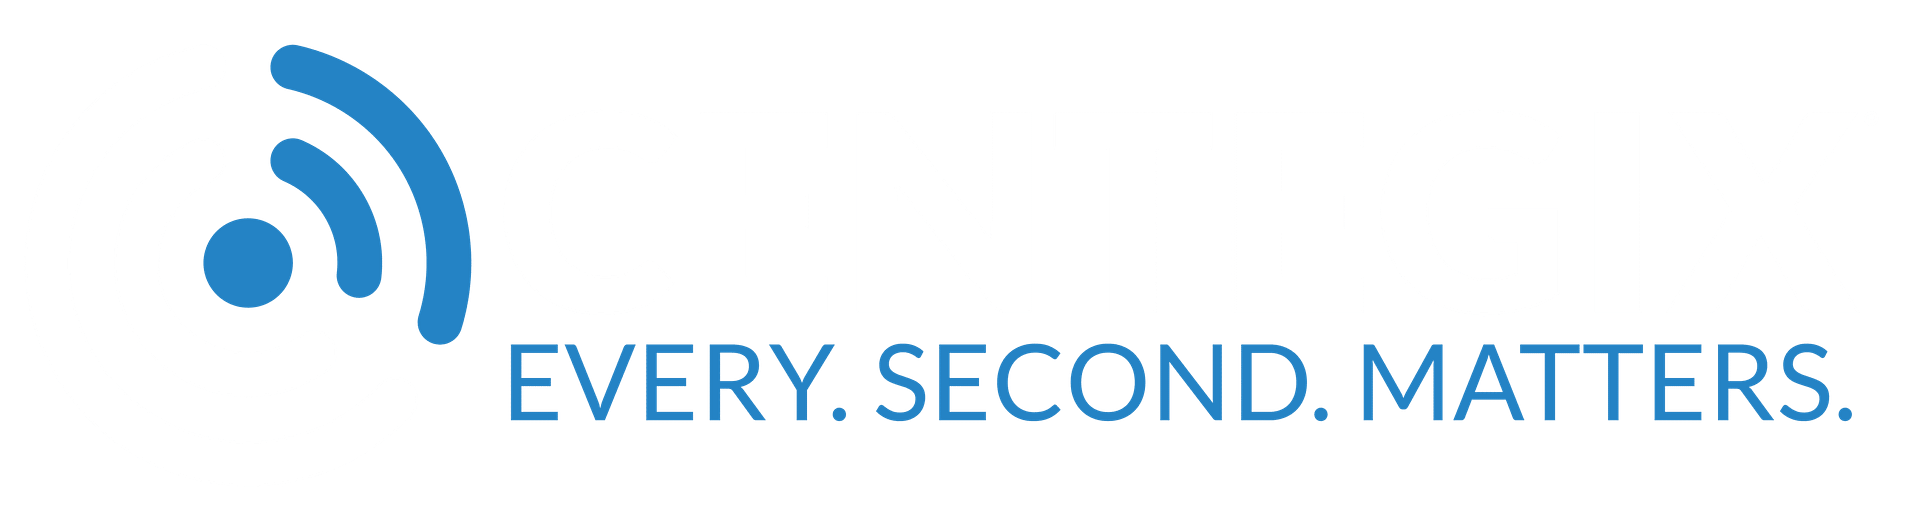 CENTEGIX Logo in white and blue